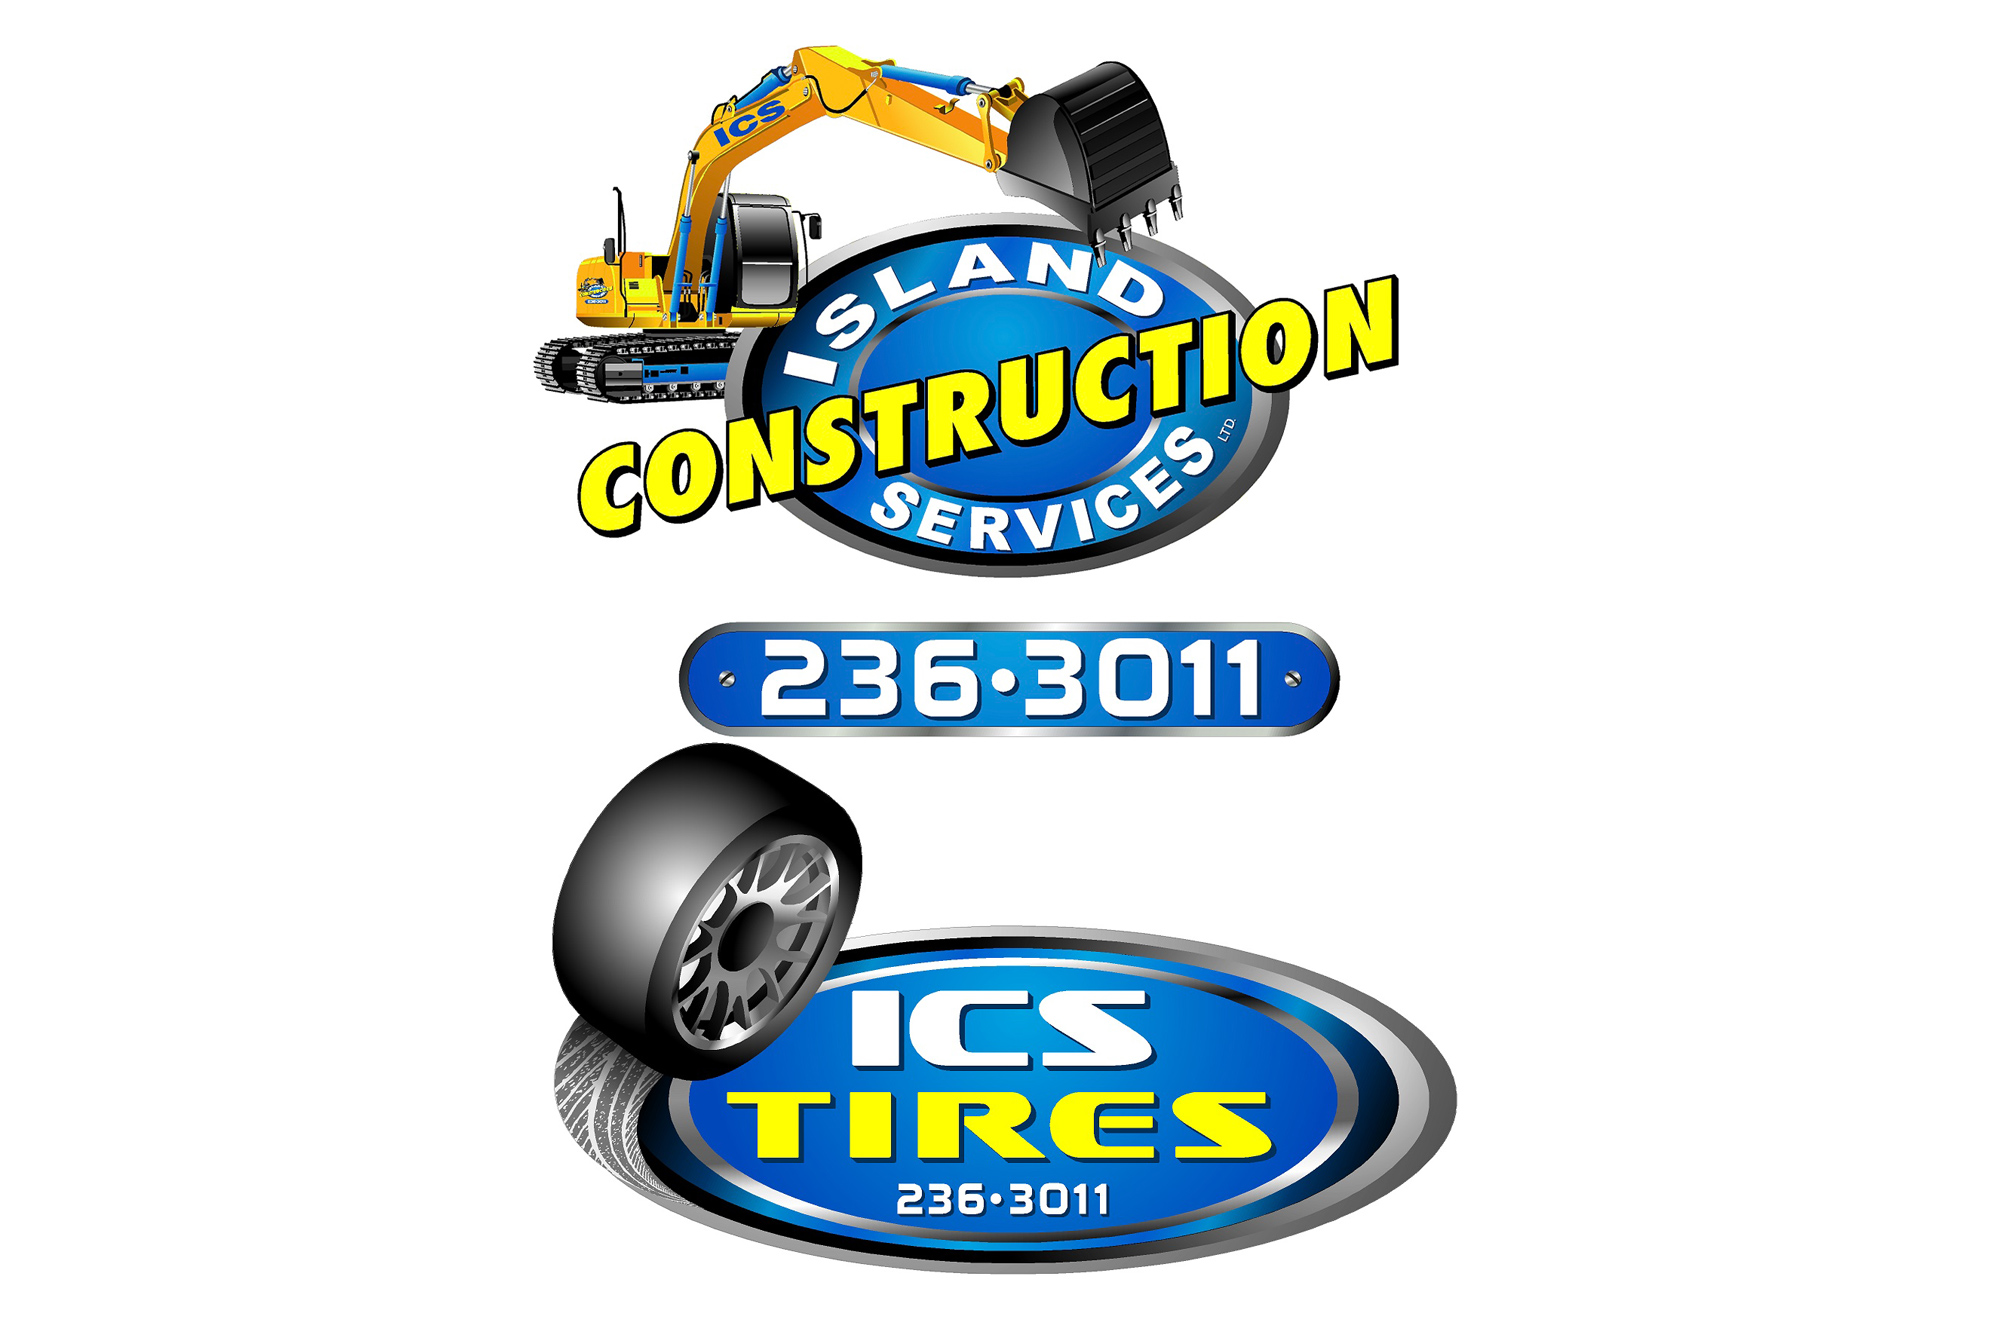 Island Construction Services logos